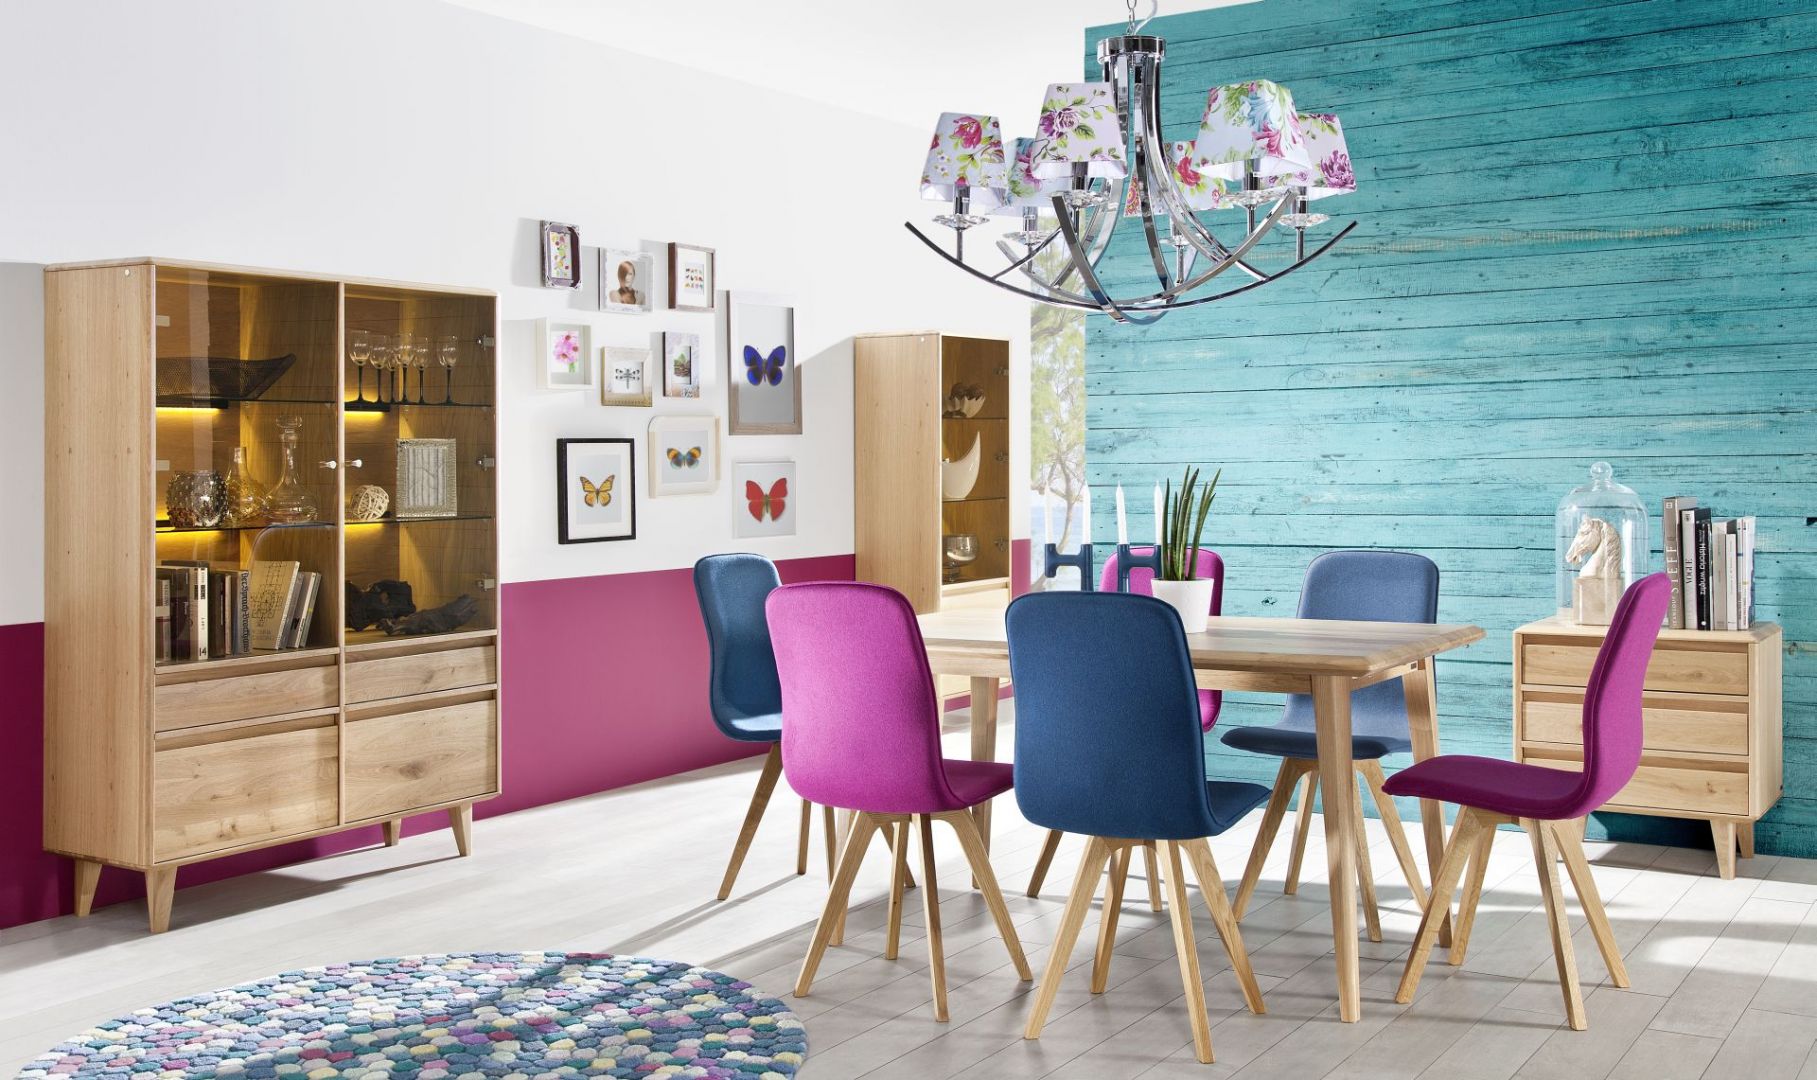 Jadalnia Lovell w nowoczesnym stylu. Ciekawym dodatkiem do stołu na cienkich nogach, będą krzesła z kolorową tapicerką. Fot. Matkowski Meble